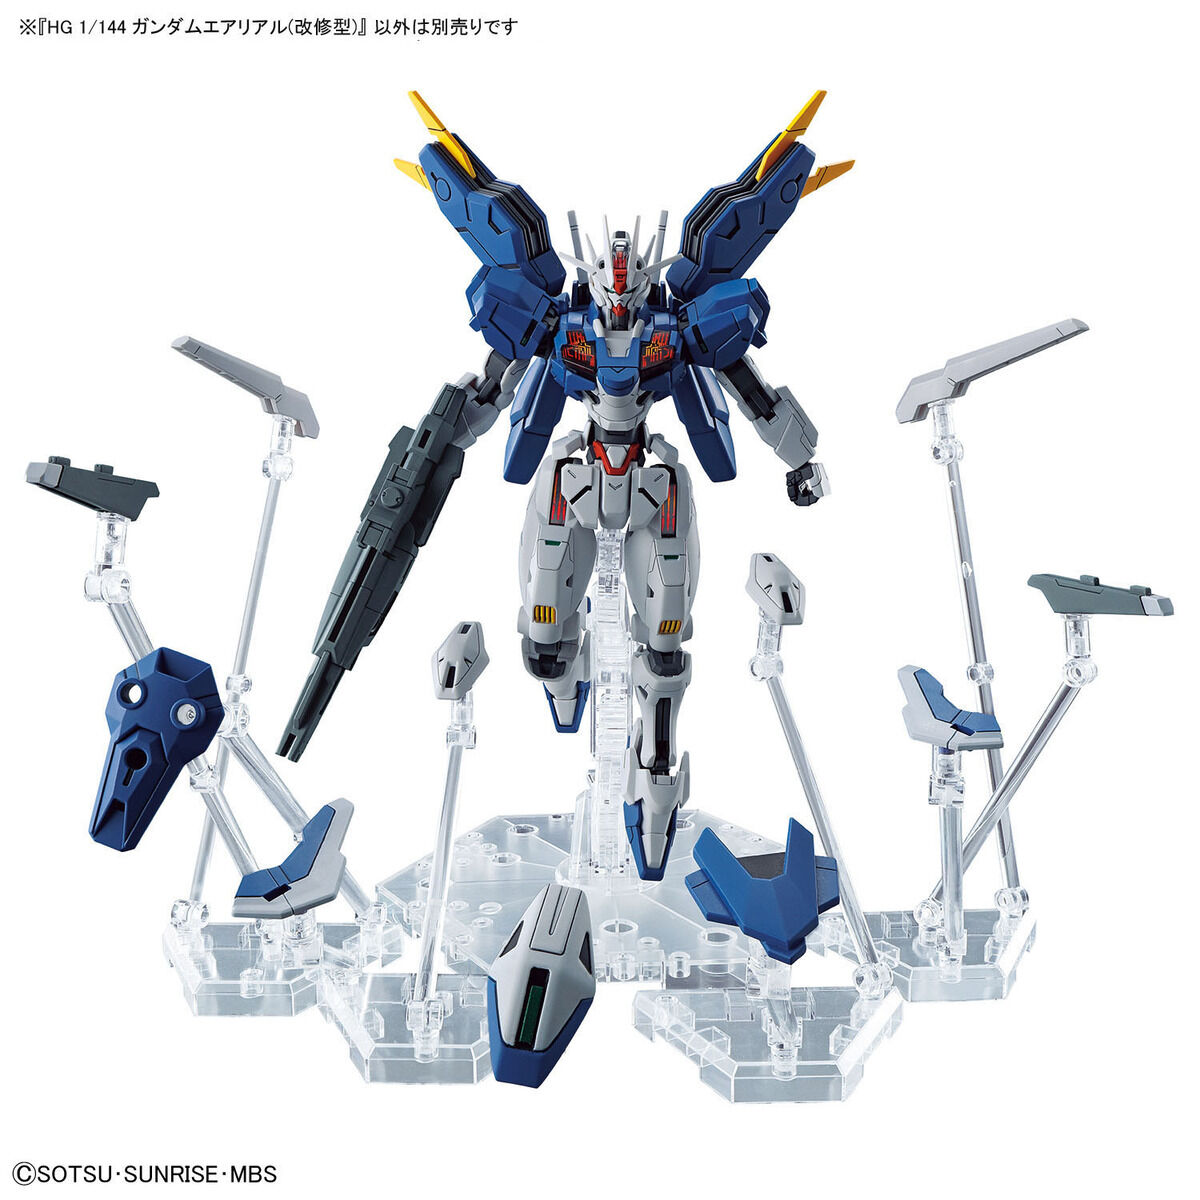 HG 1/144 Gundam Aerial Rebuild (Mobile Suit Gundam: The Witch from Mercury)